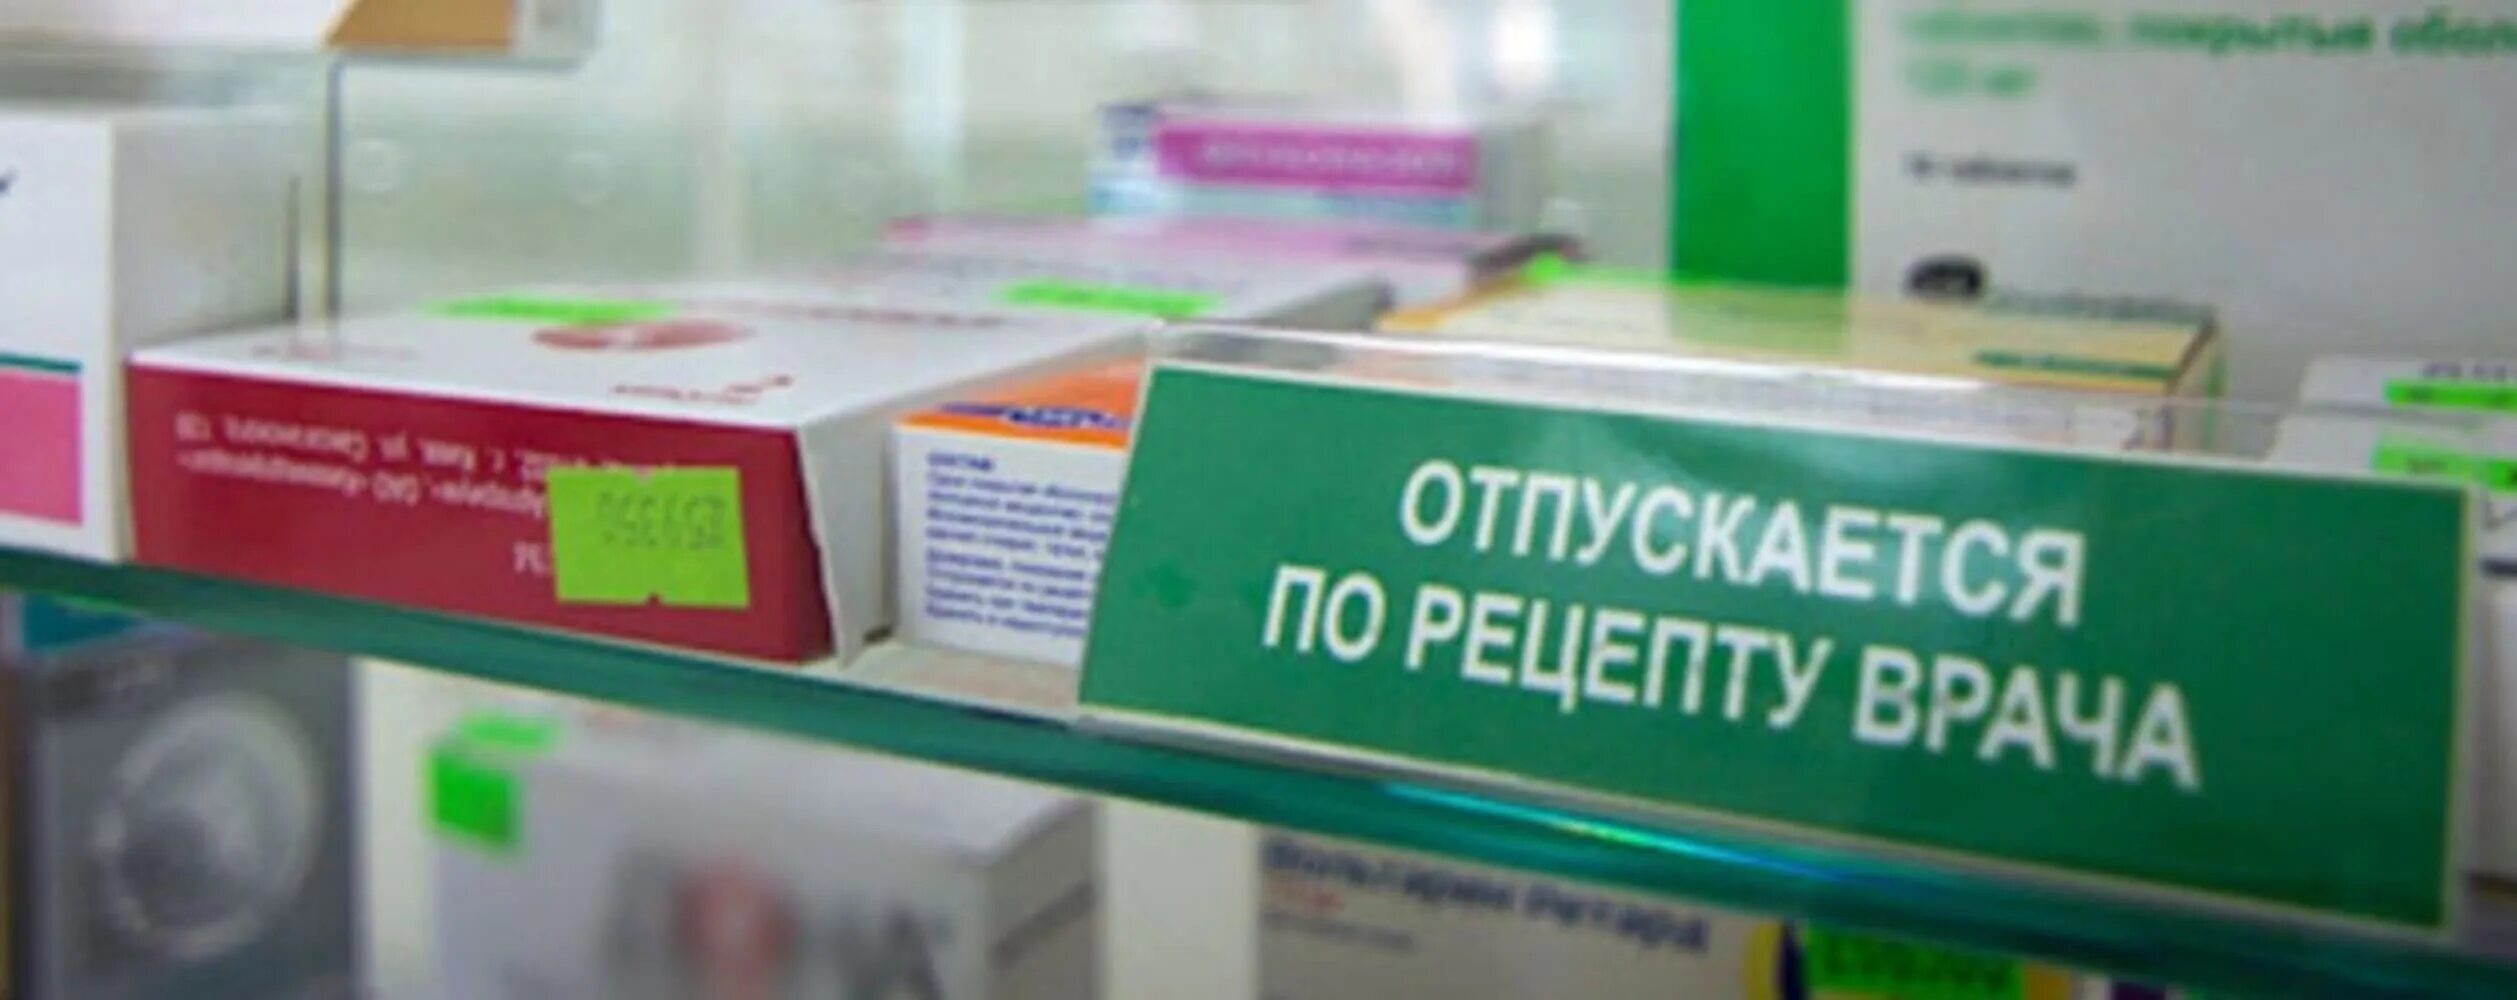 Можно ли купить антибиотик в аптеке. Лекарства в аптеке по рецепту. Рецептурные препараты в аптеке. По рецепту на лекарственный препарат.